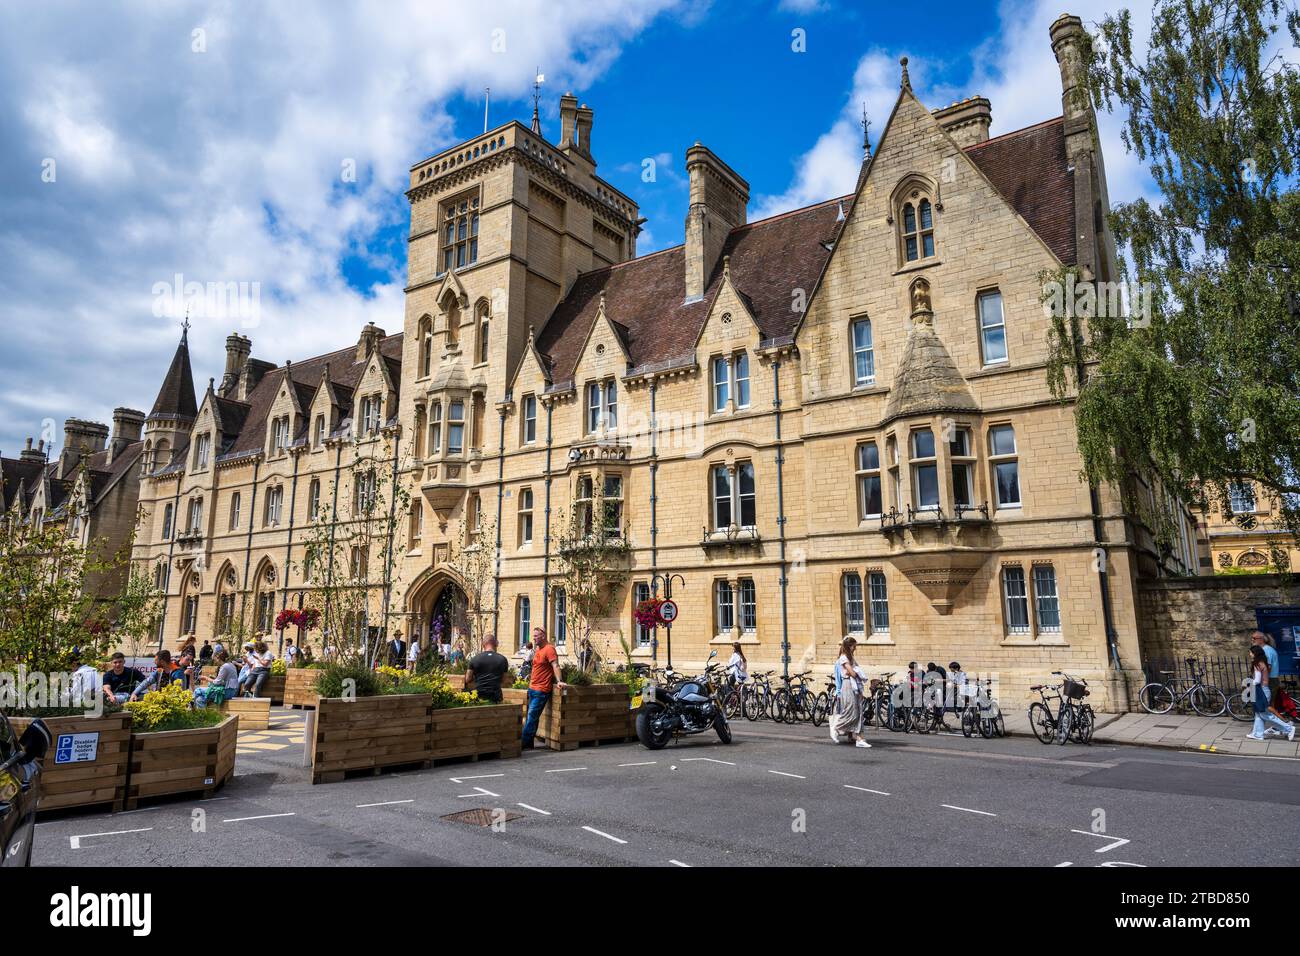 Balliol College, Université d'Oxford, sur Broad Street dans le centre-ville d'Oxford, Oxfordshire, Angleterre, Royaume-Uni Banque D'Images